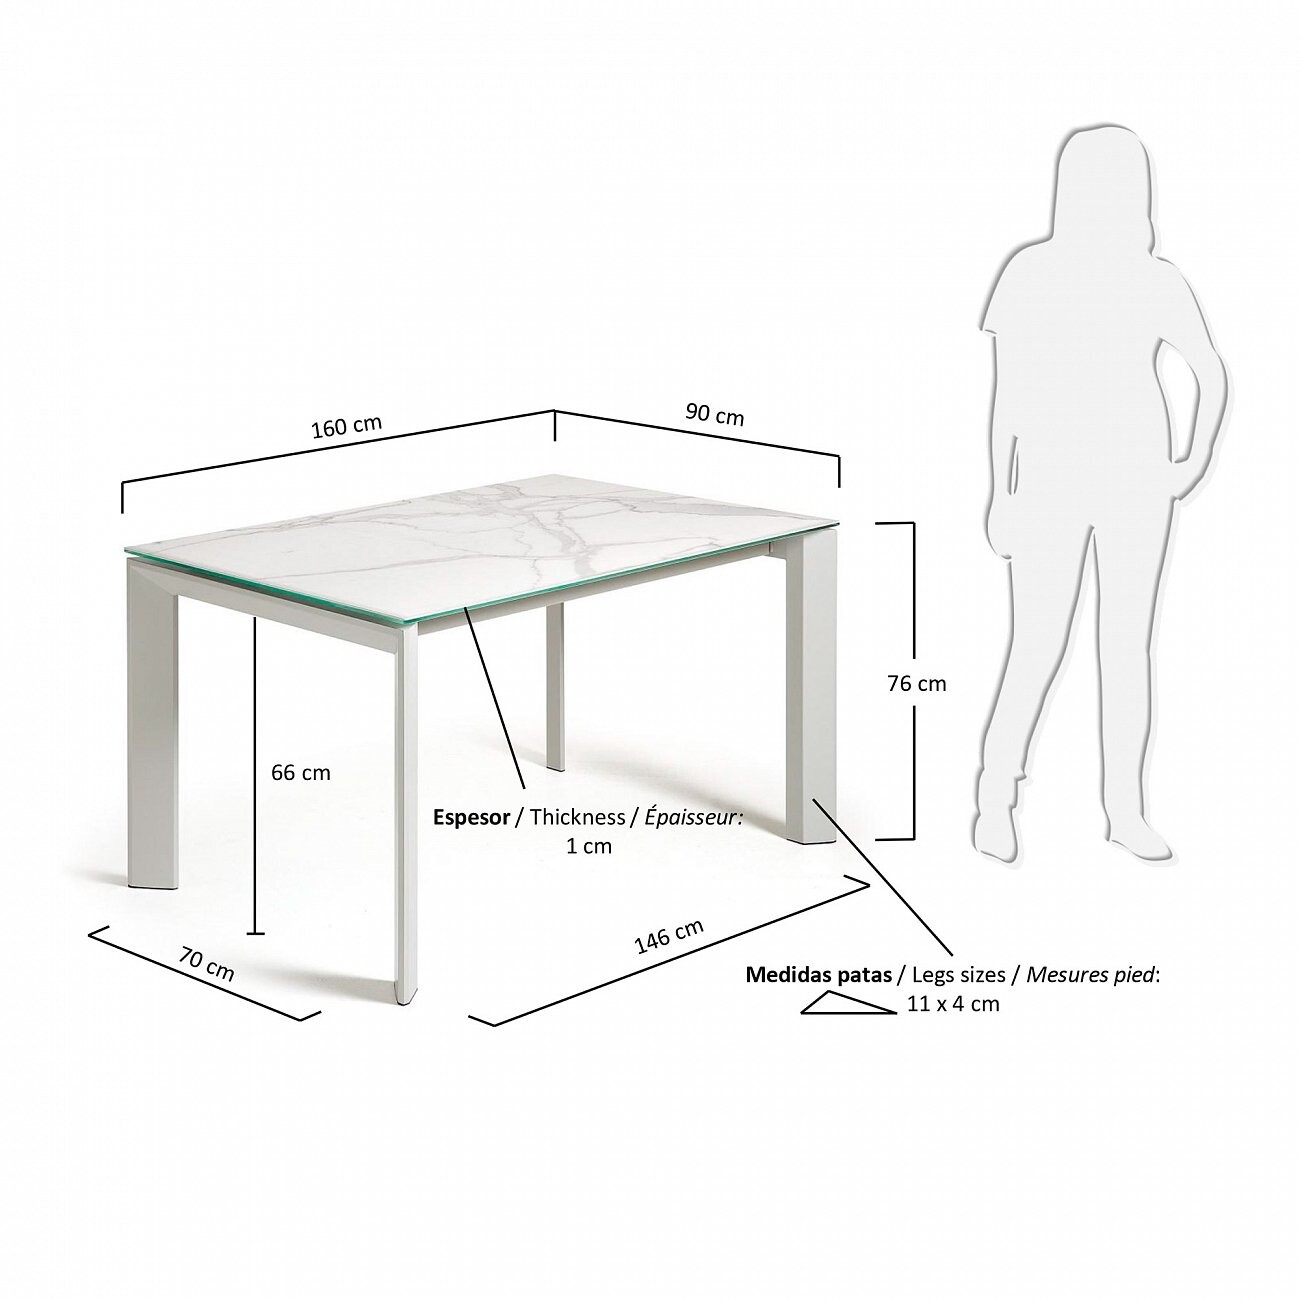 Высота кухонного обеденного стола стандарт